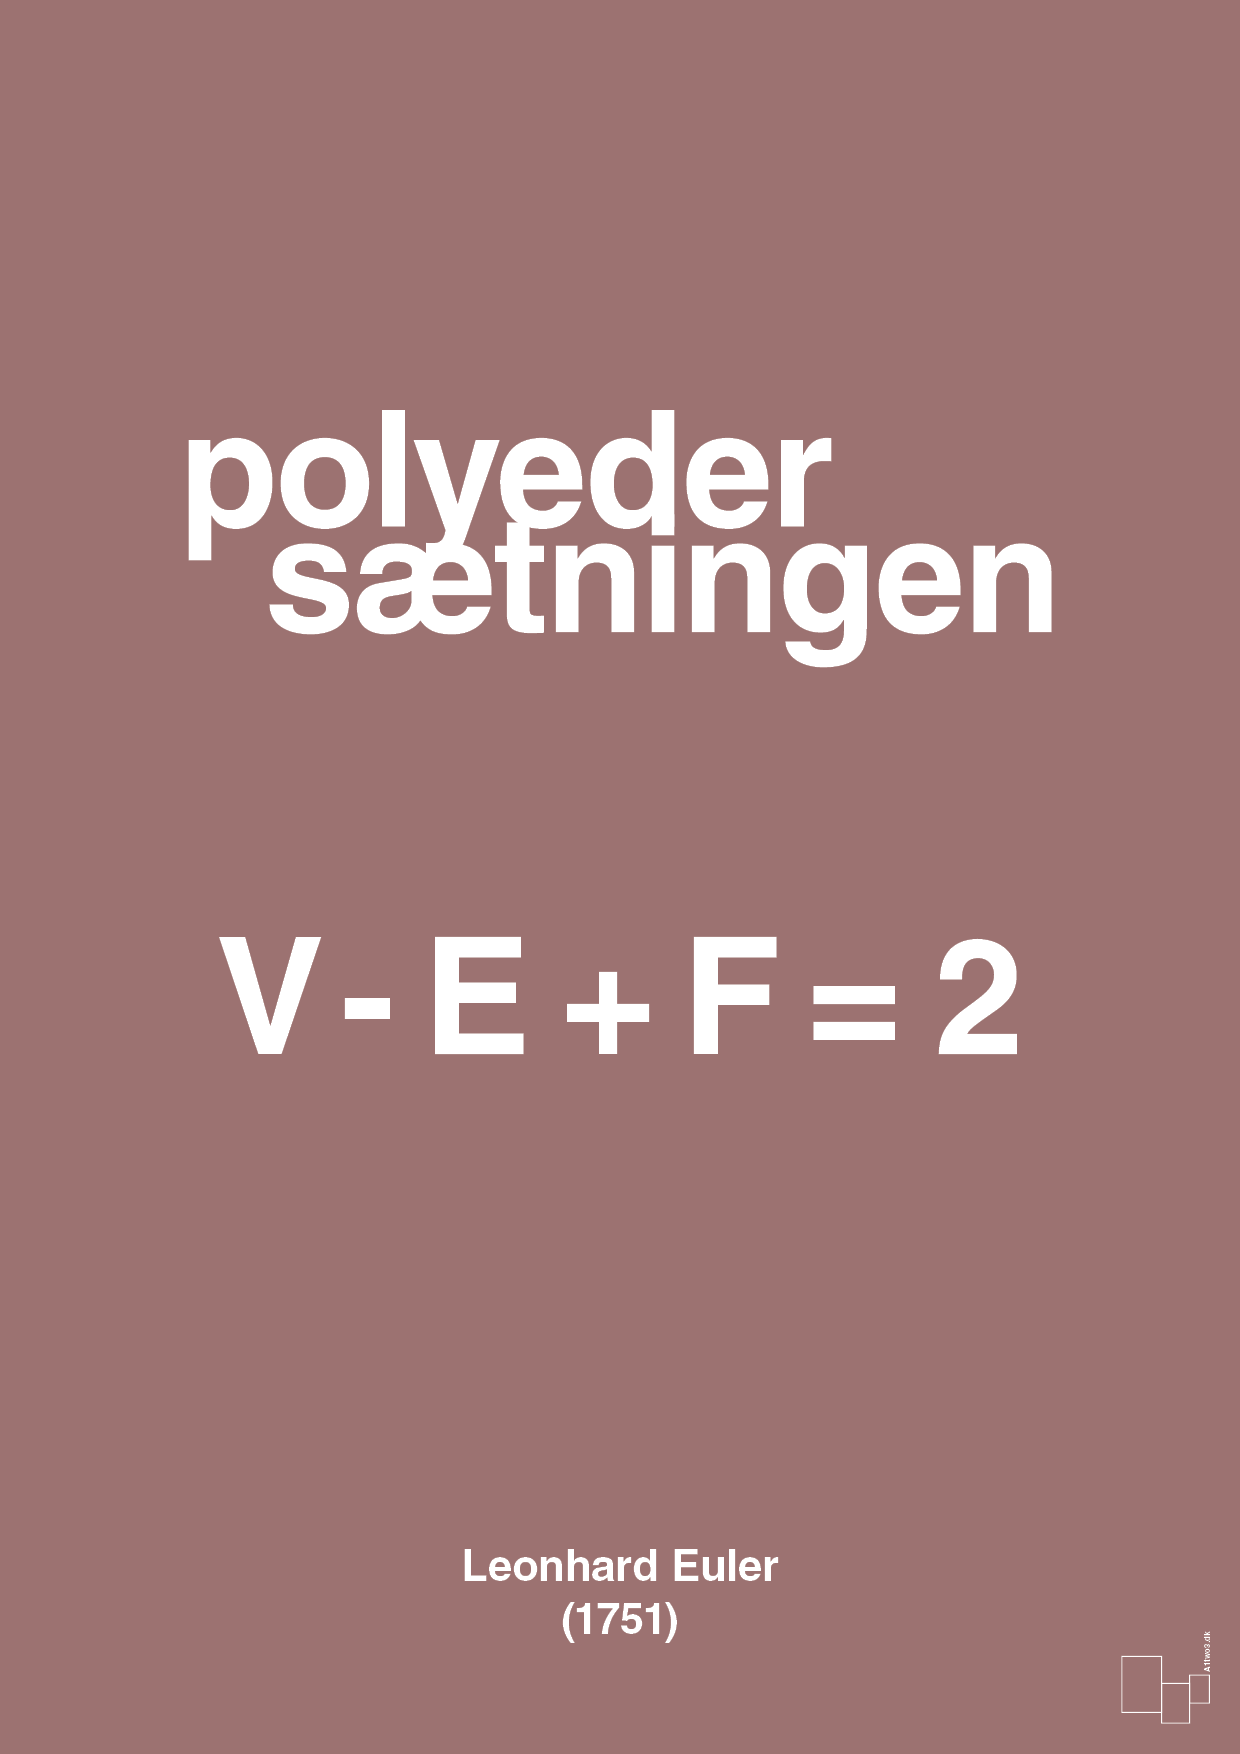 polyeder sætningen - Plakat med Videnskab i Plum